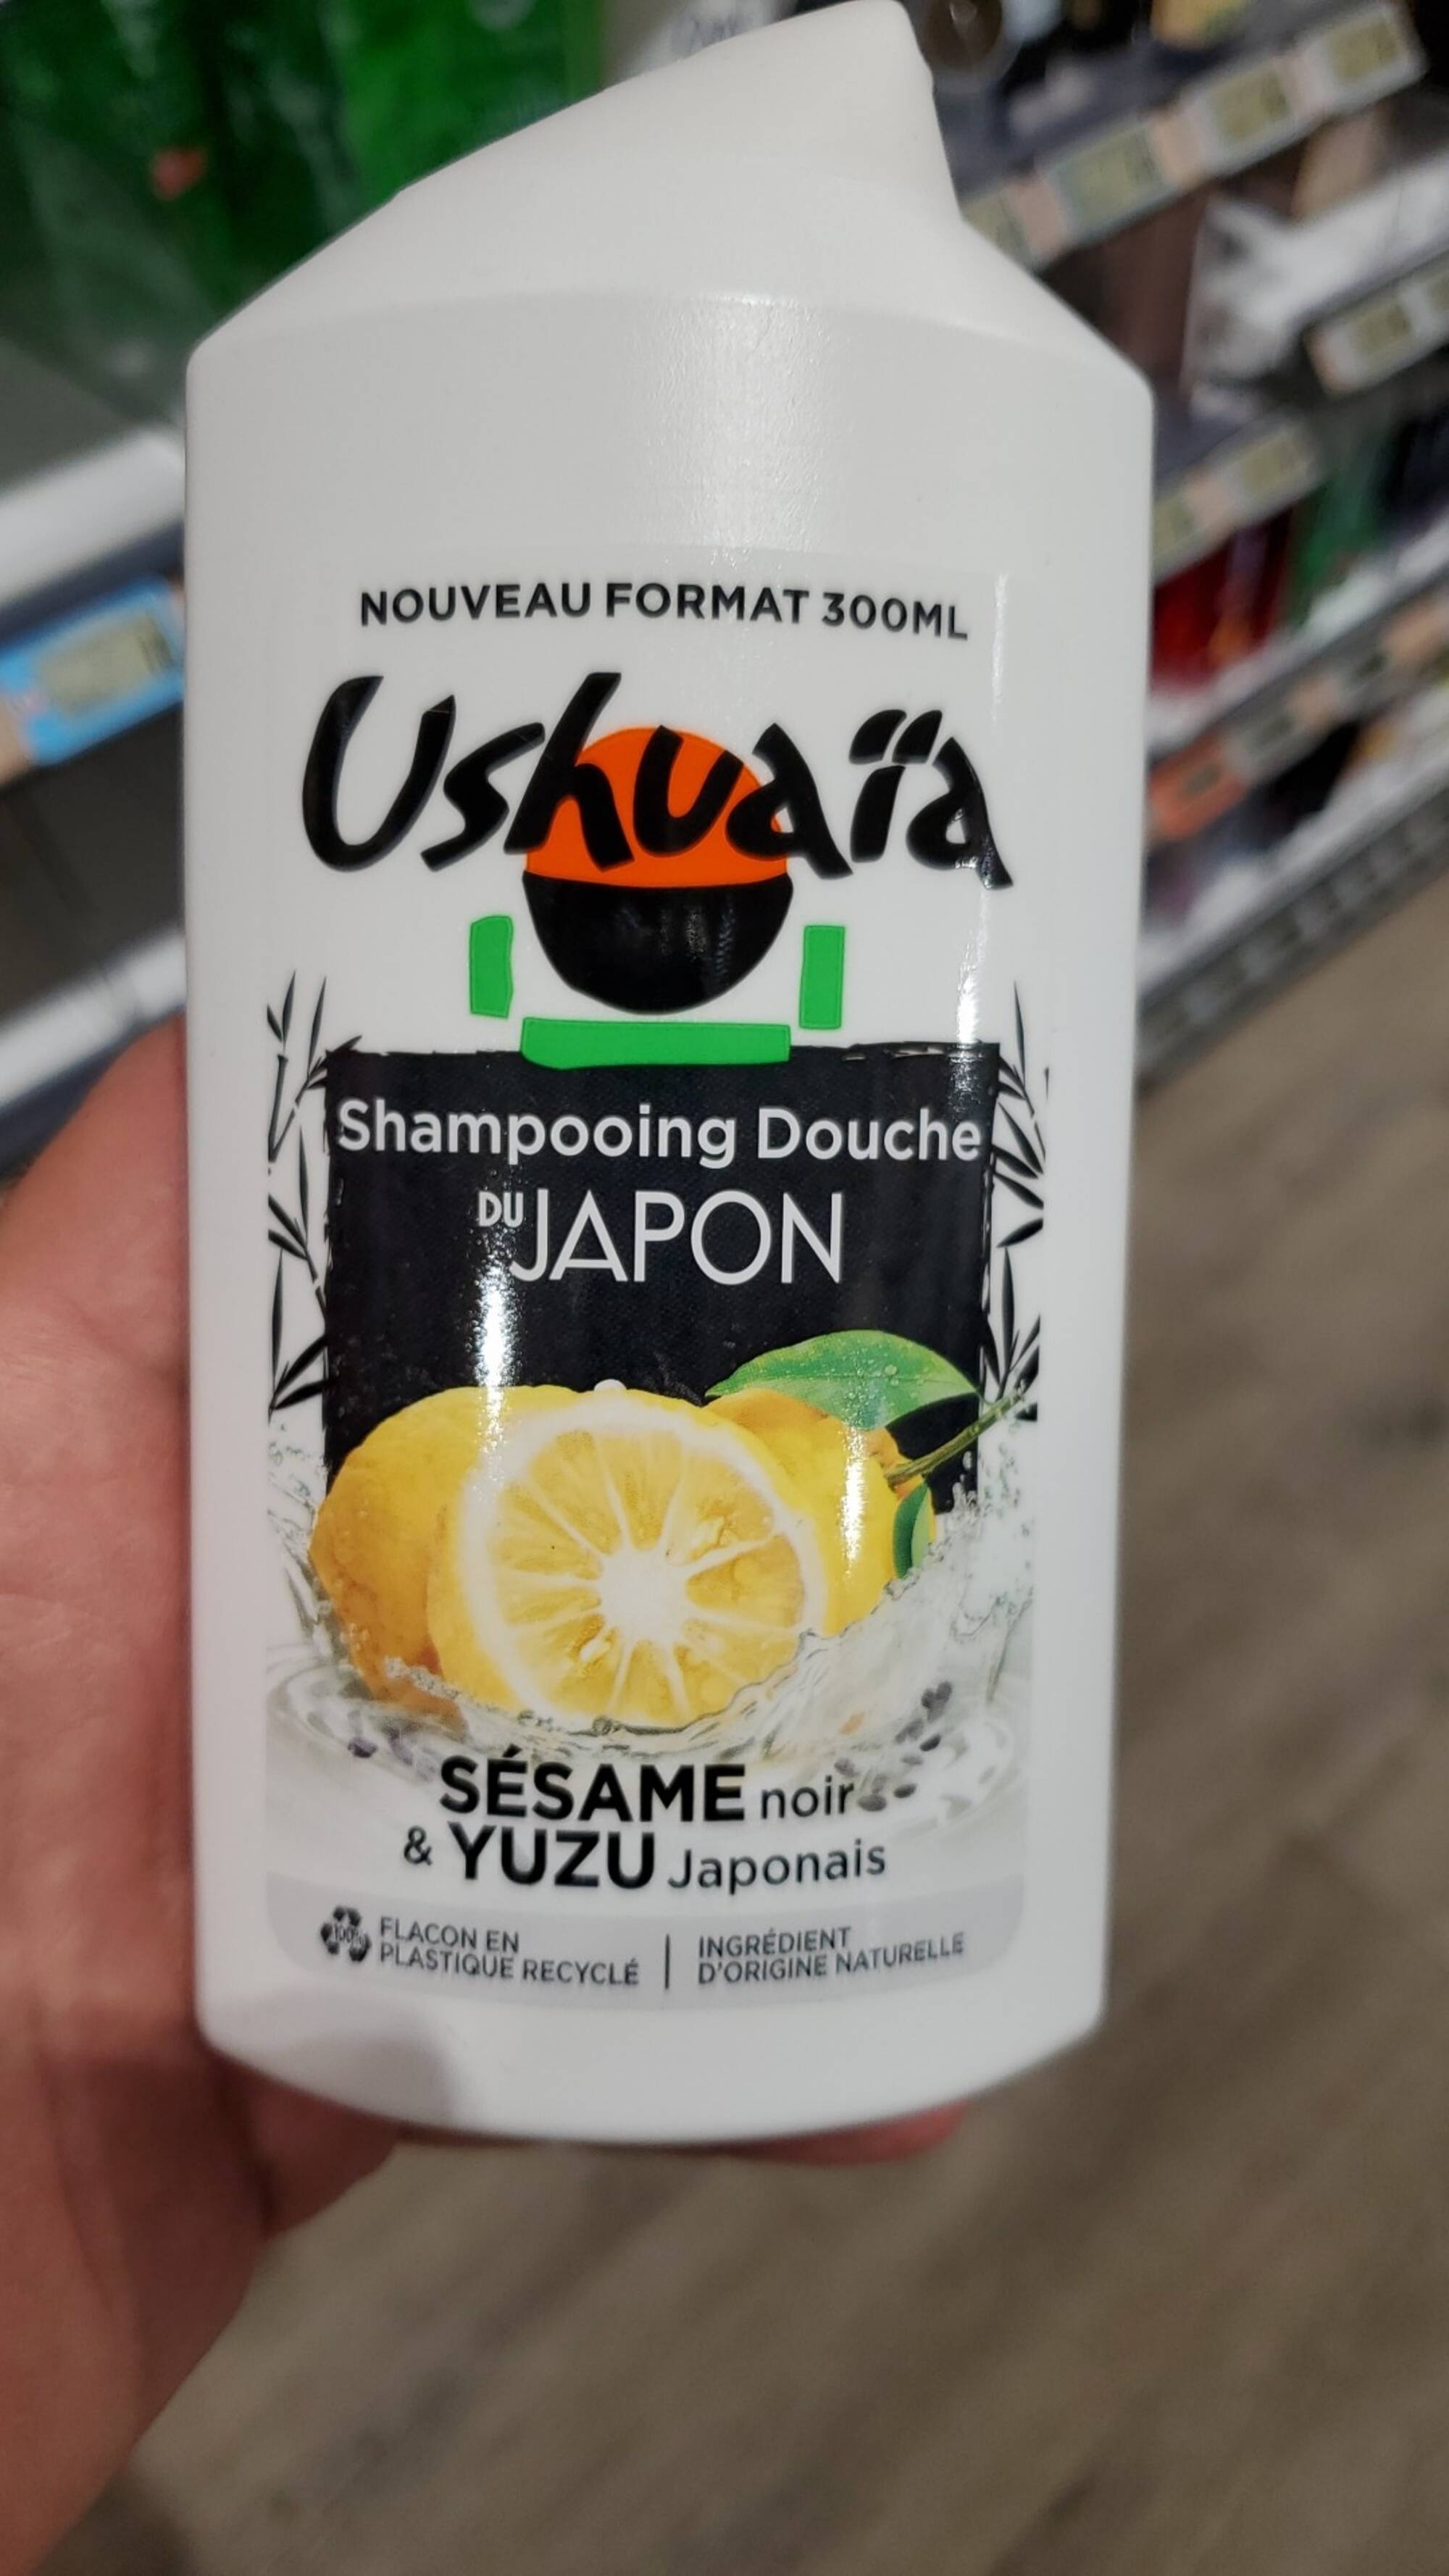 USHUAÏA - Shampooing douche du Japon sésame noir &yuzu japonais